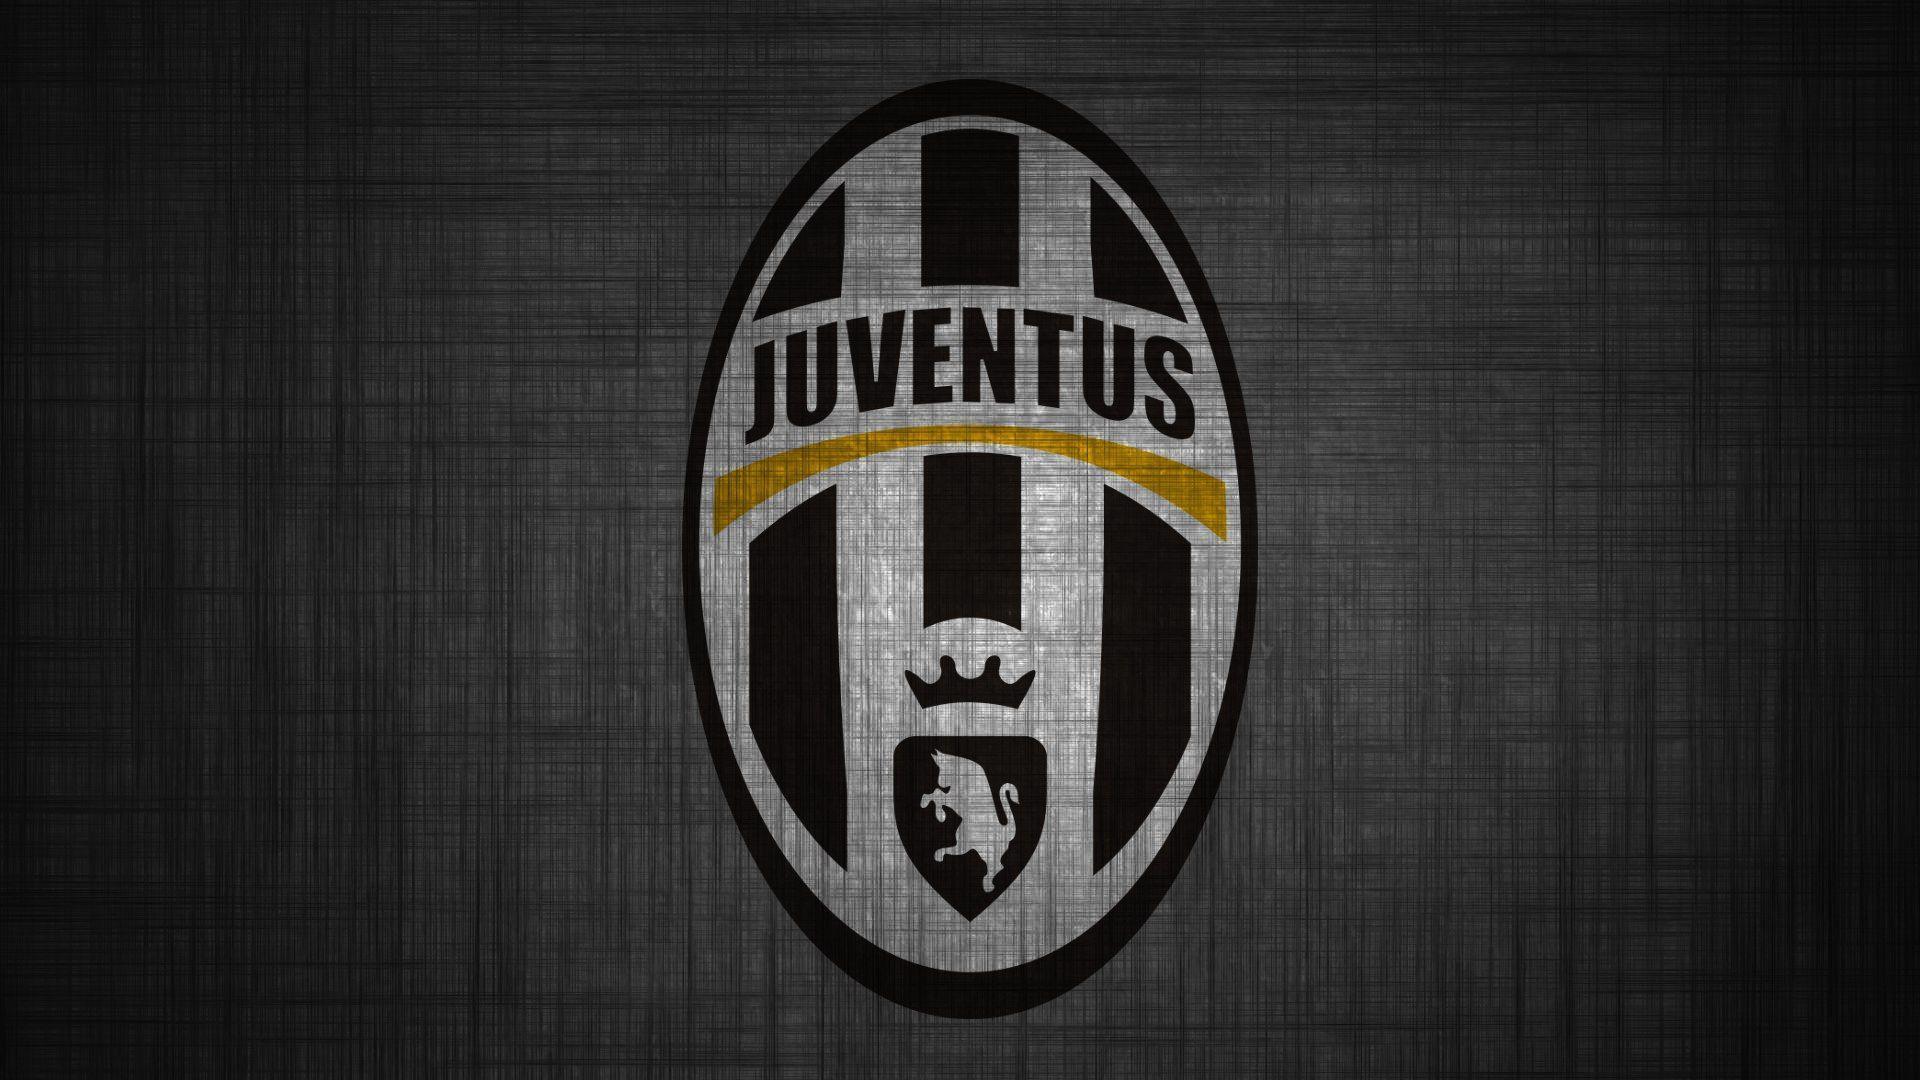 Juventus Wallpaper. Just Good Vibe